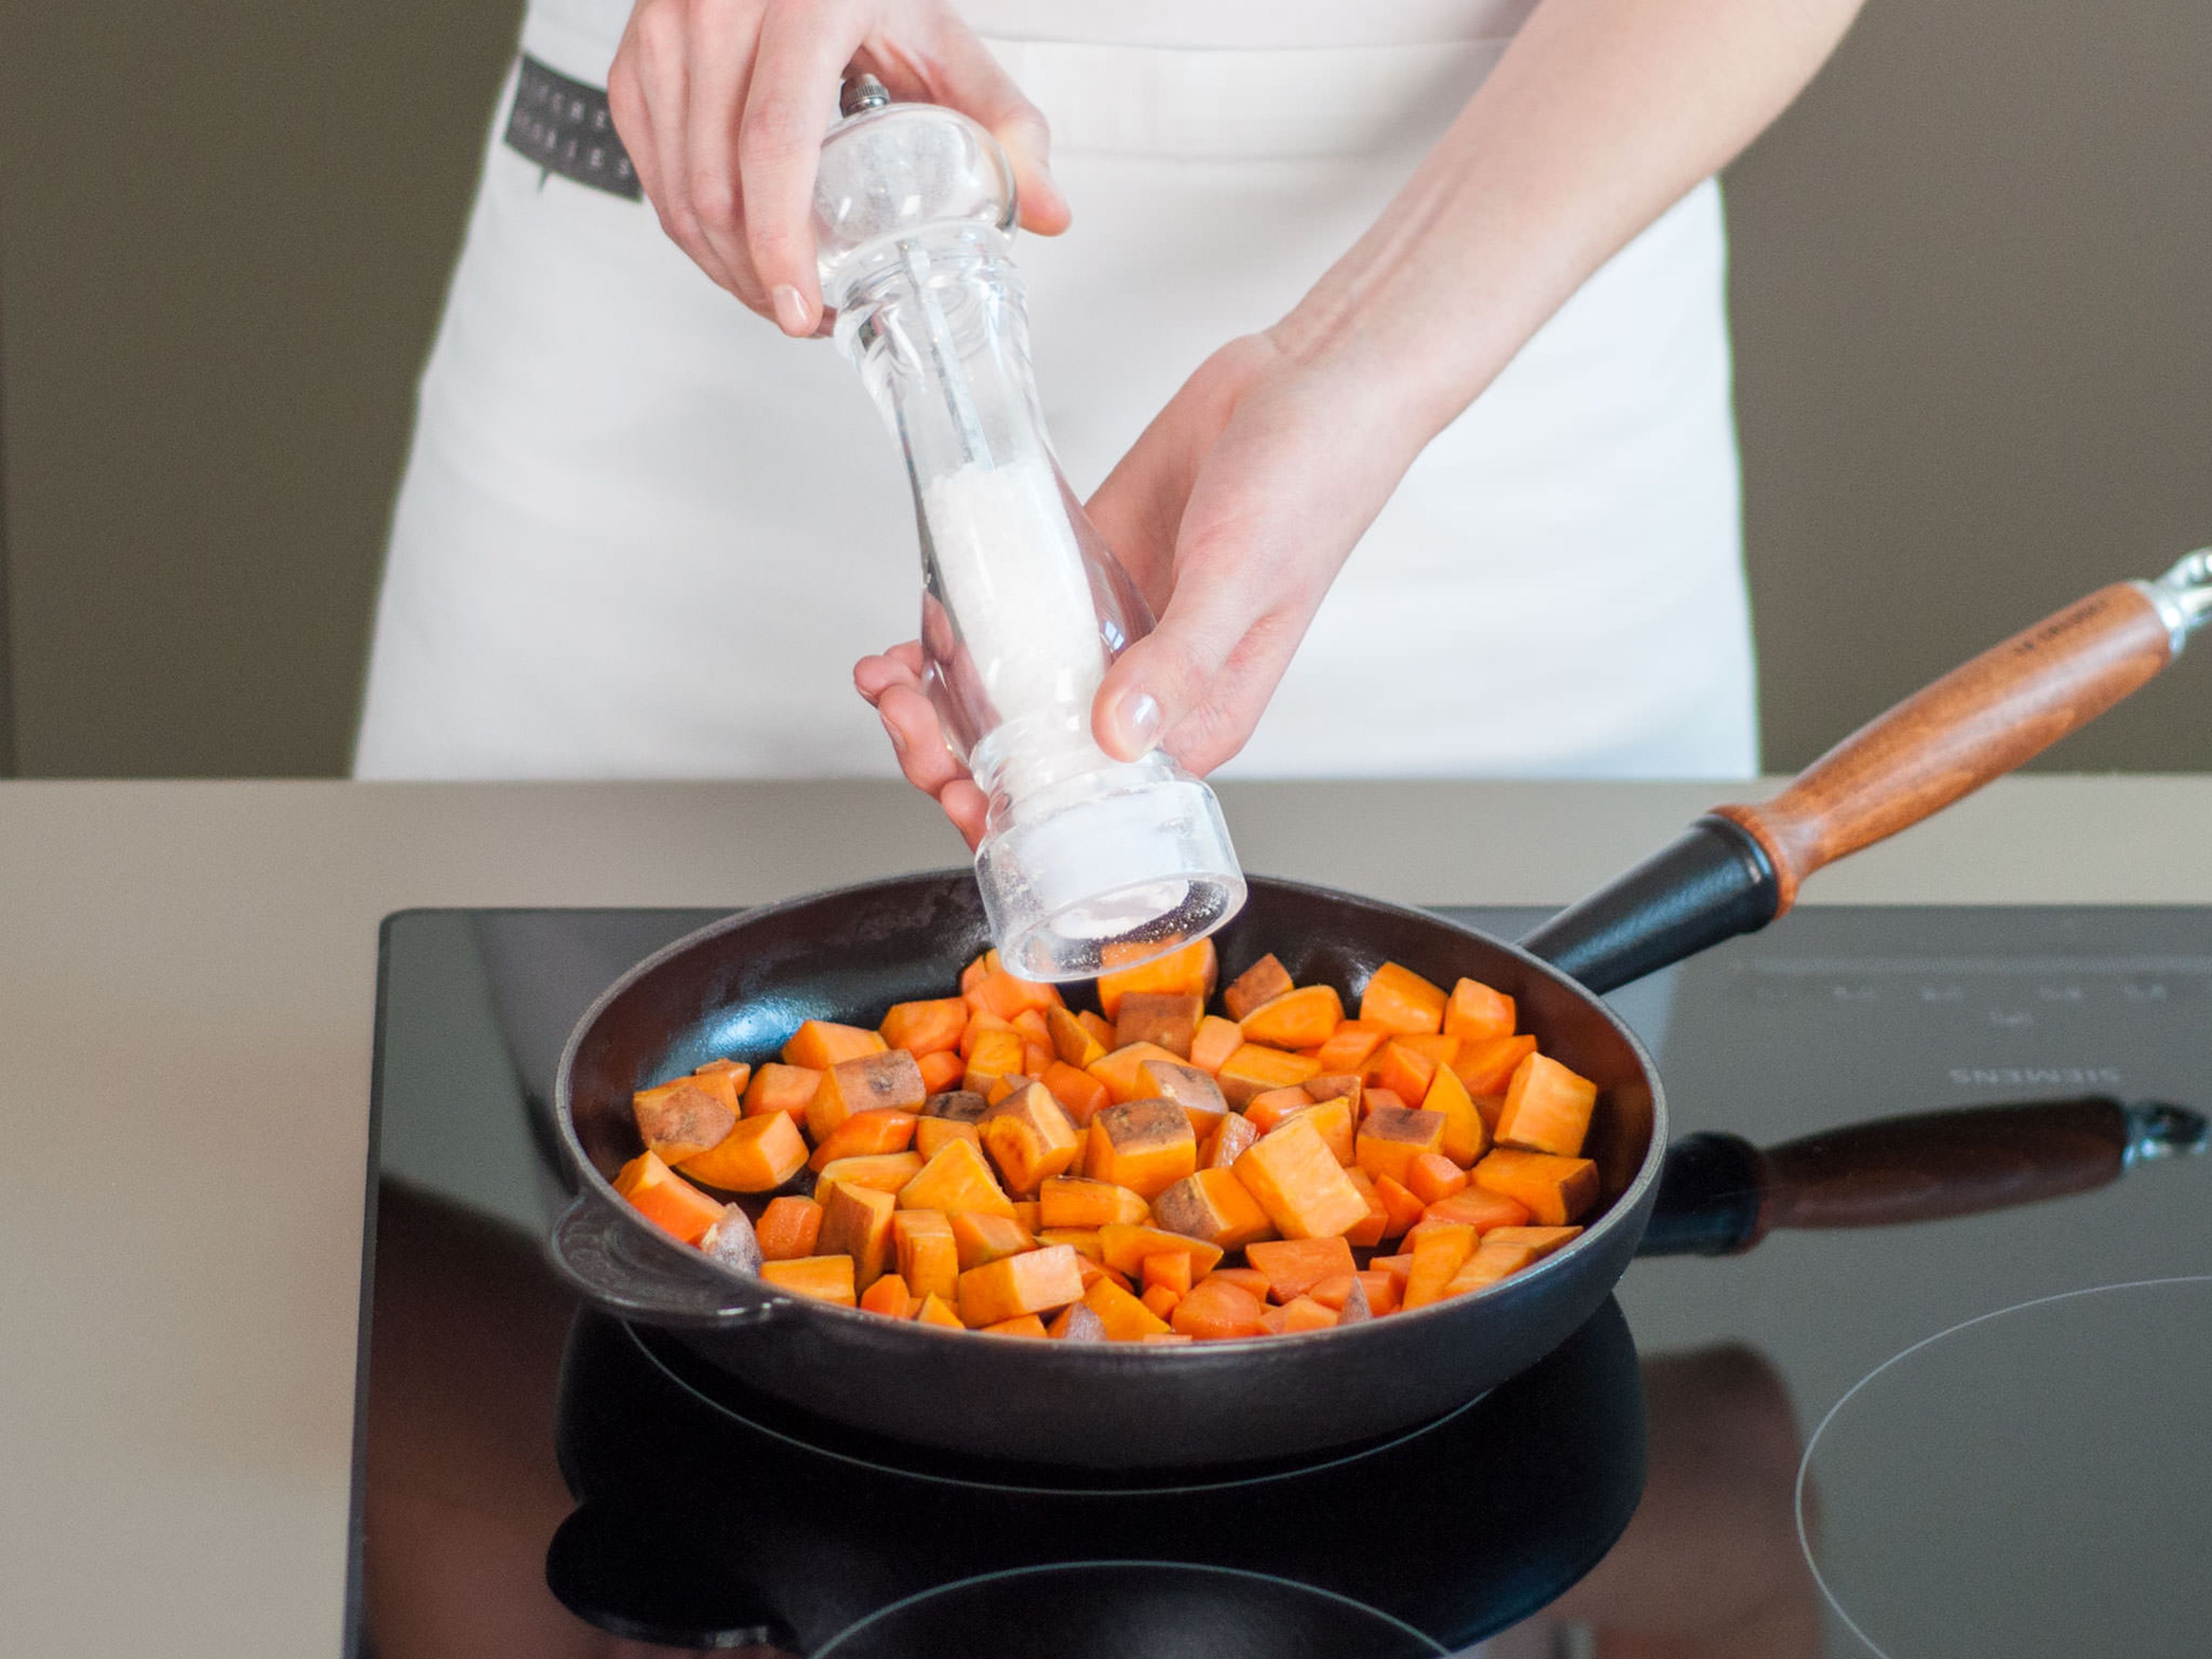 Süßkartoffelwürfel in einer großen Pfanne bei mittlerer Hitze für ca. 6 - 10 Min. goldbraun anbraten. Karotten hinzugeben und für weitere ca. 3 - 5 Min. anbraten.